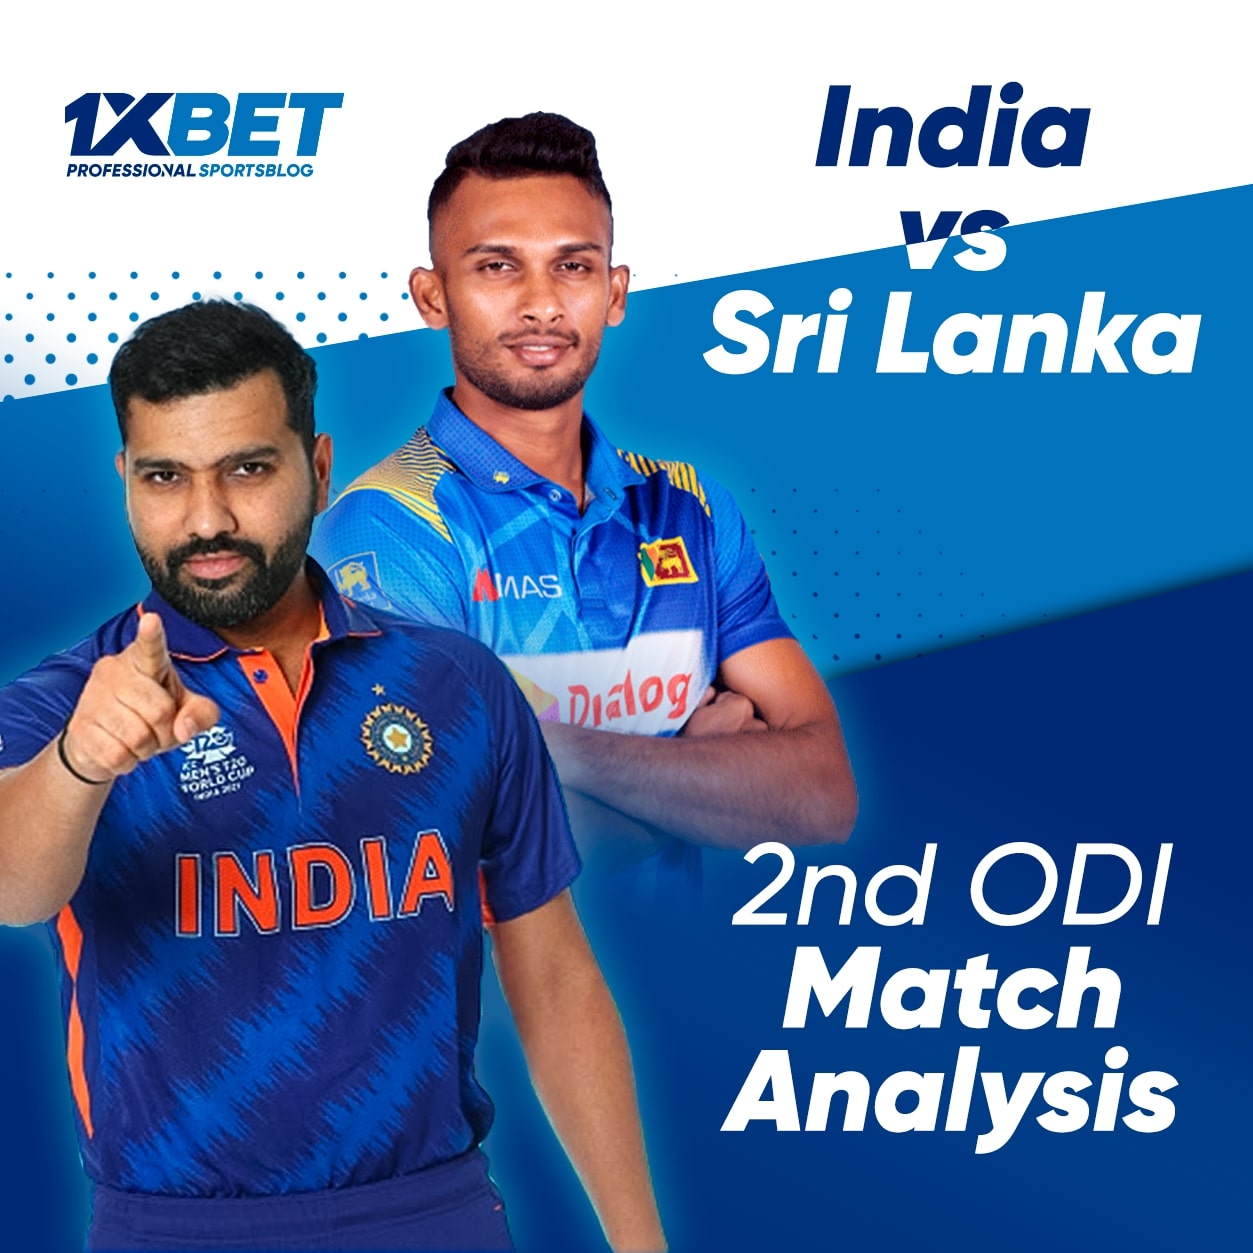 India vs Sri Lanka, 2nd ODI Match Analysis